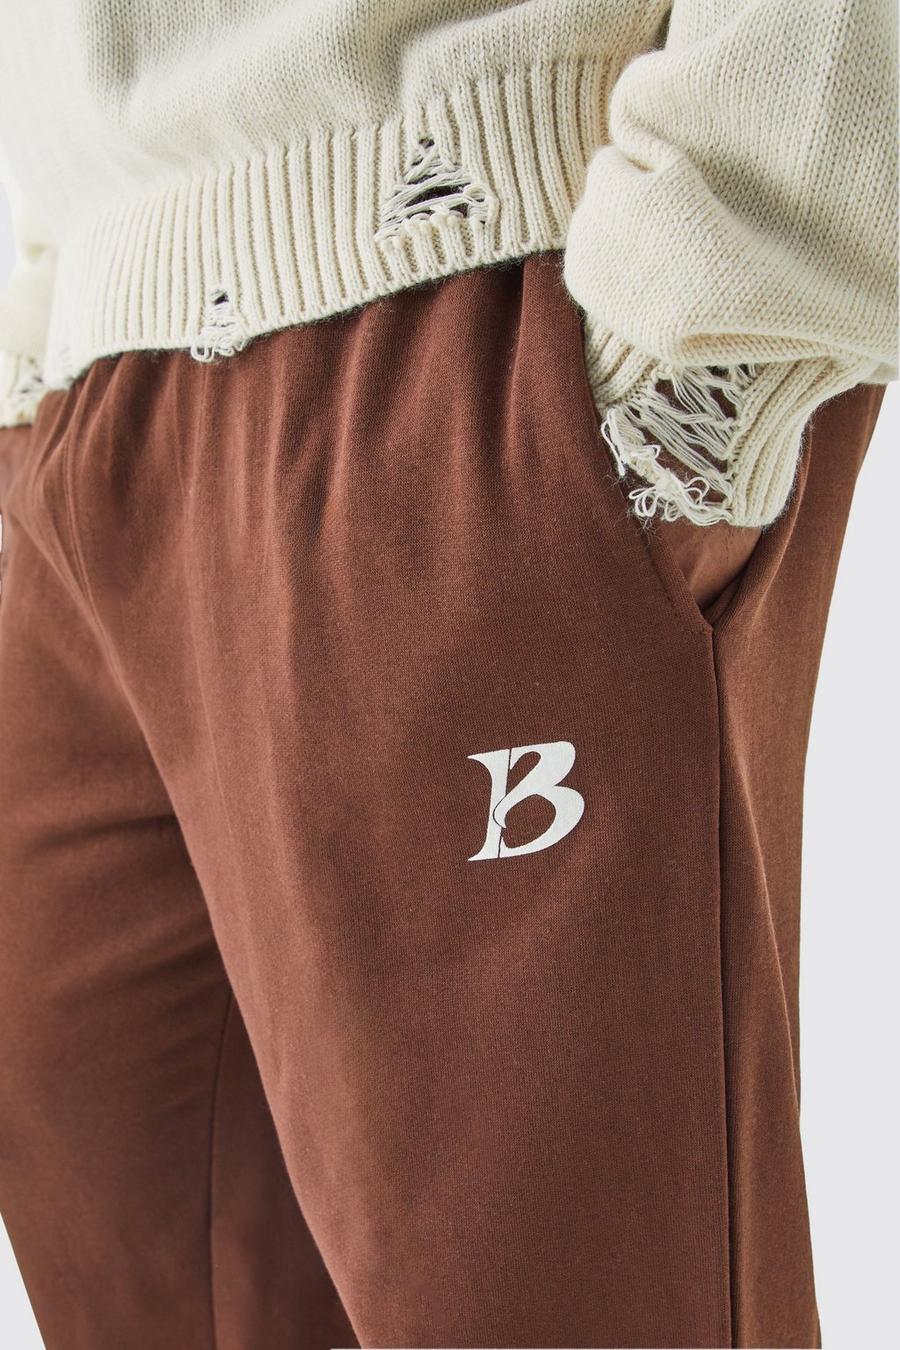 Pantaloni tuta Plus Size color cioccolato con slogan Core B, Chocolate